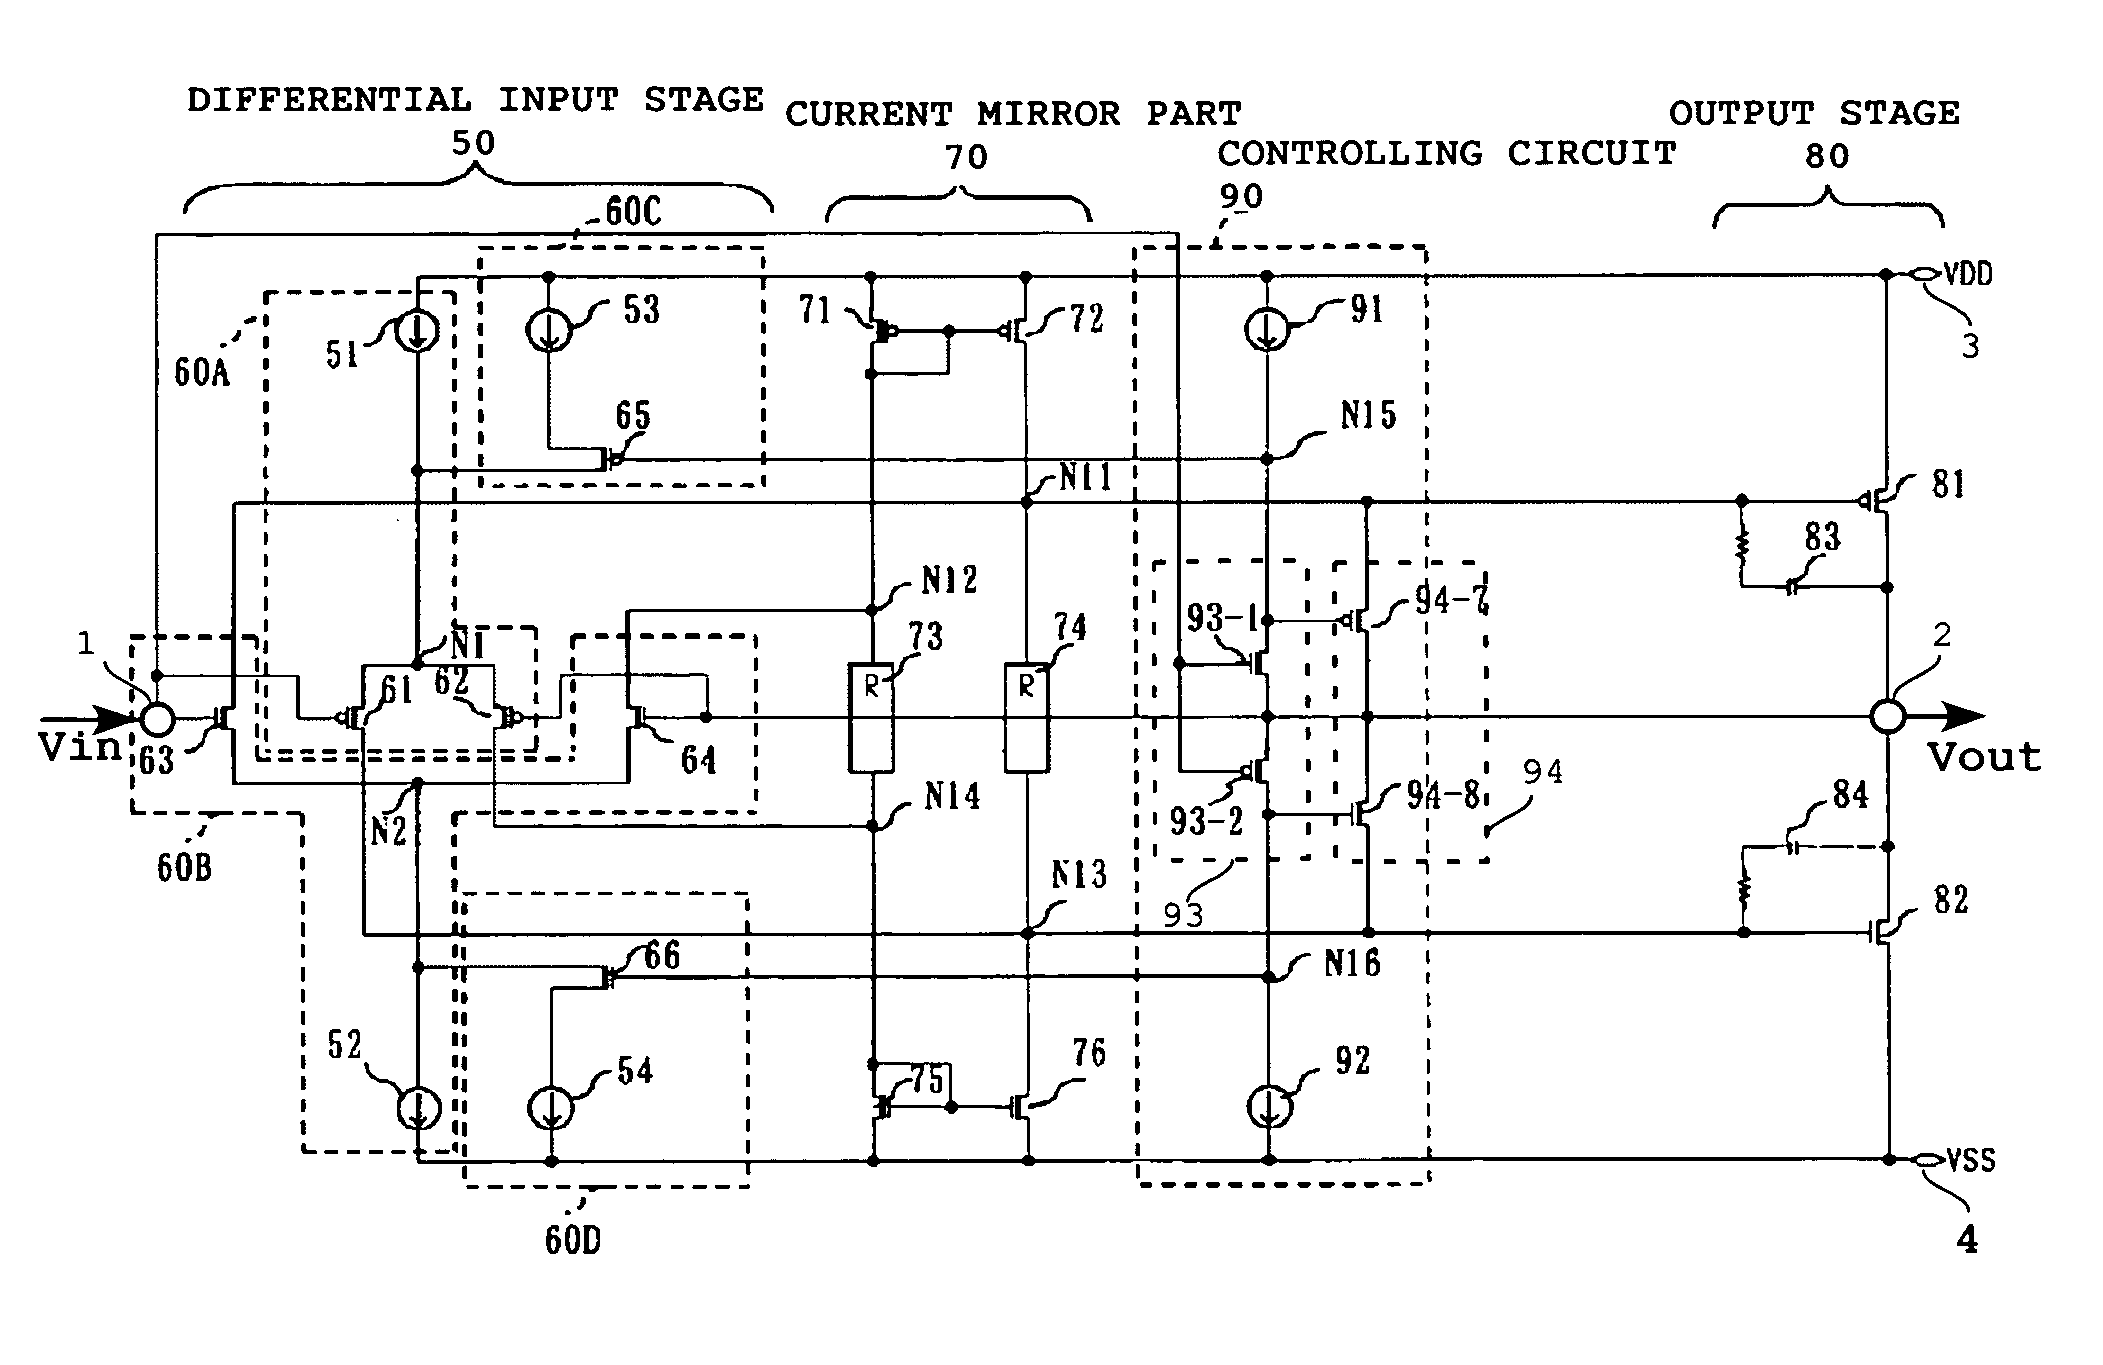 Driver circuit usable for display panel